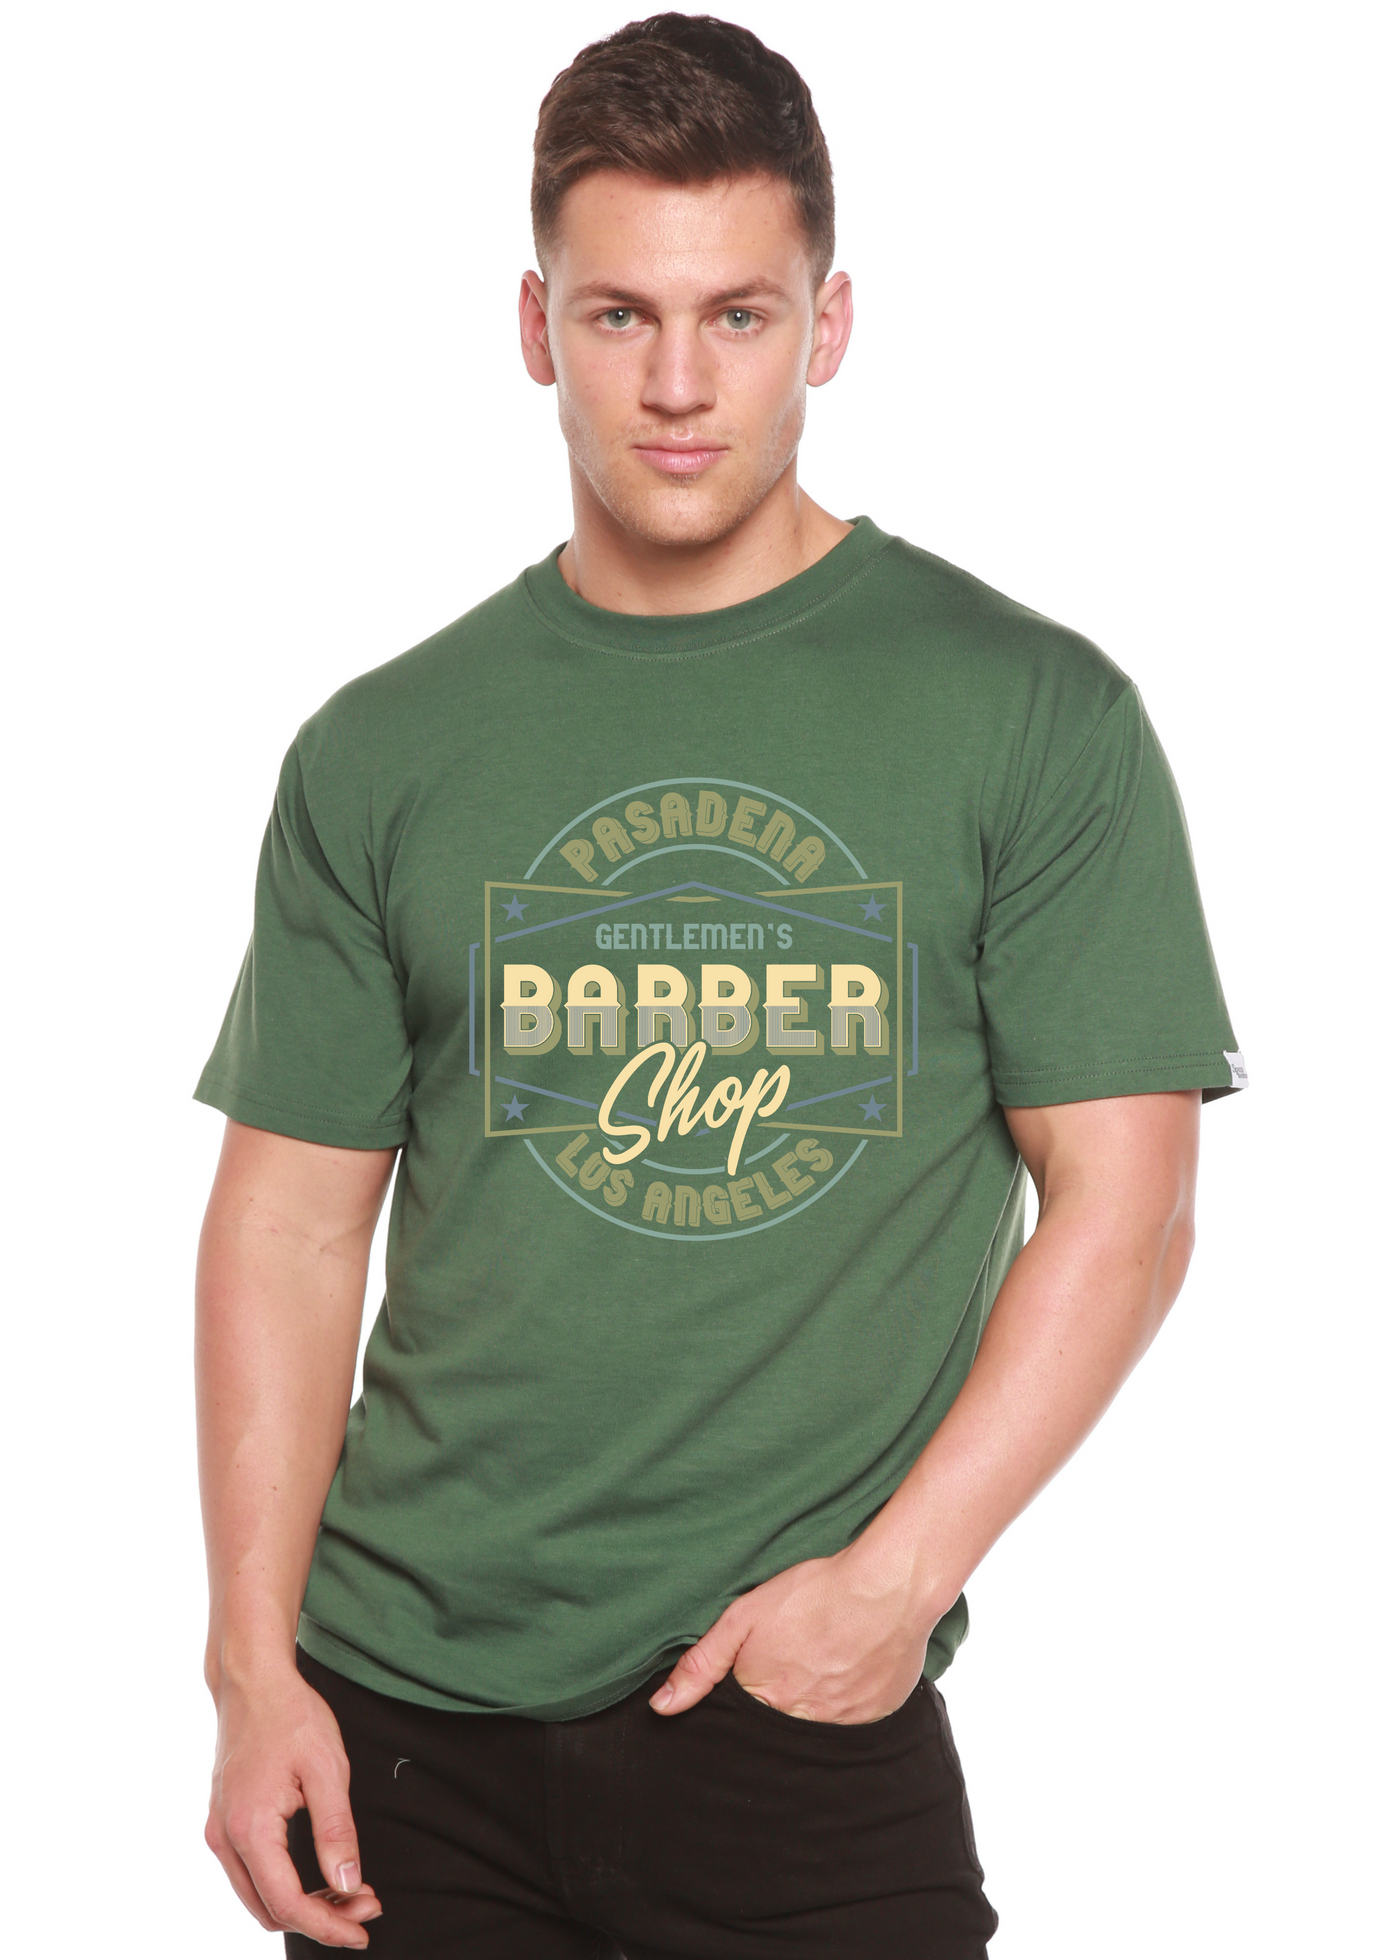 Gentlement's Barber Shop men's bamboo tshirt pine green